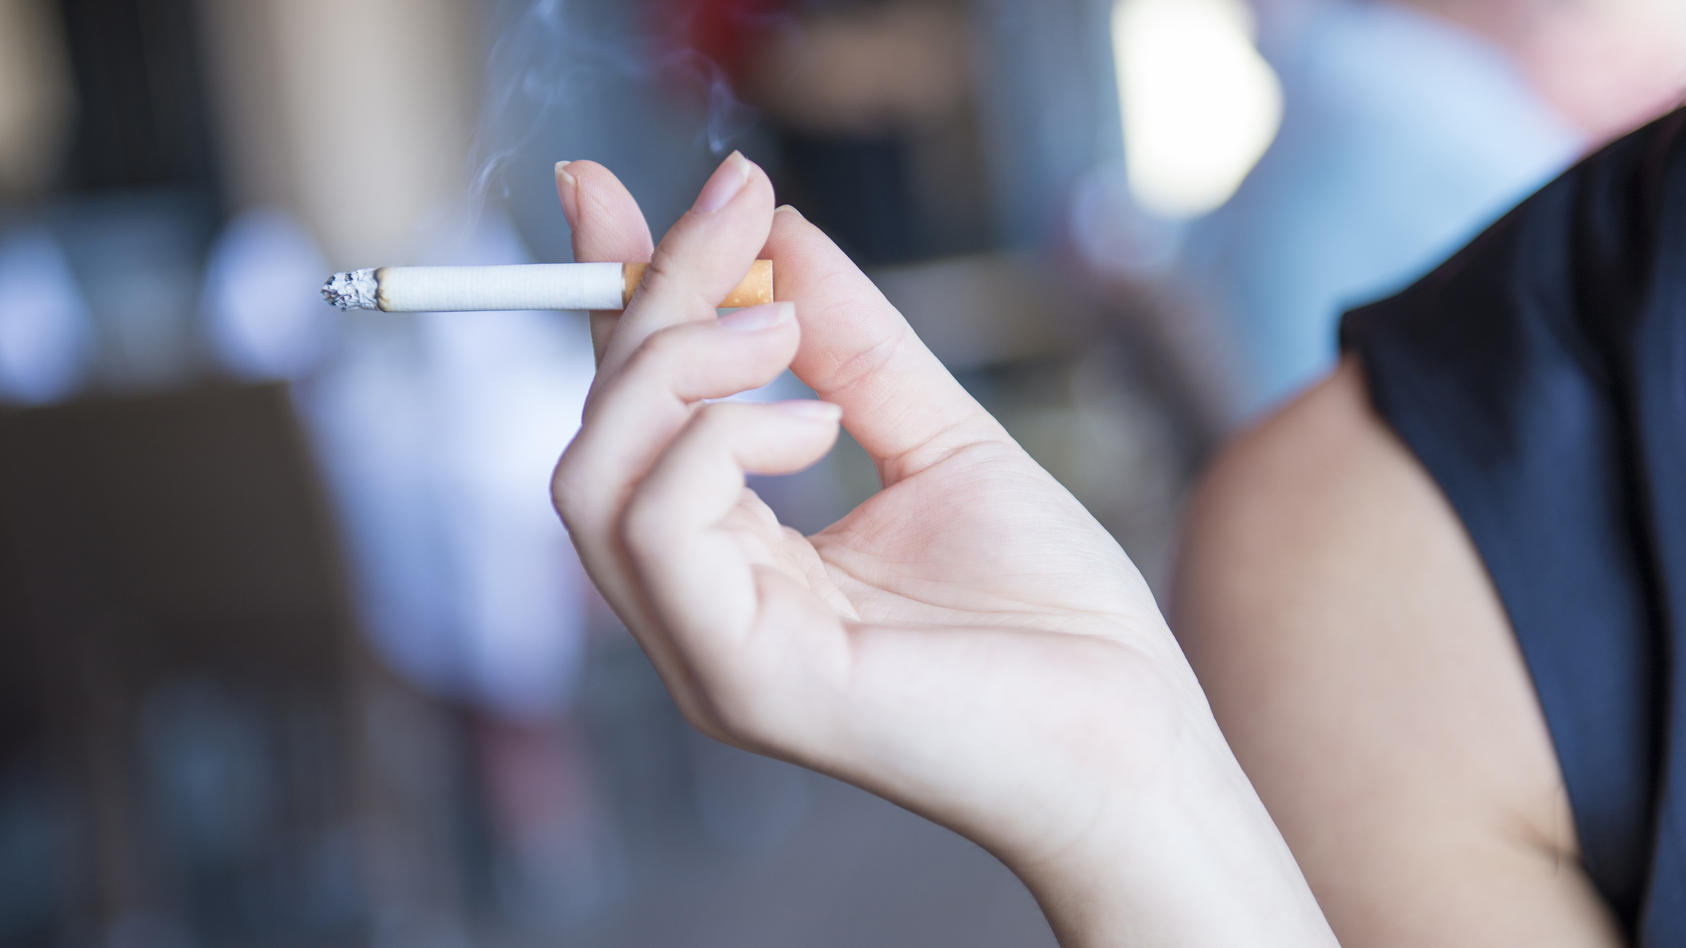 Laut einer französischen Studie sind unter den untersuchten COVID-19-Patienten nur wenige Raucher.